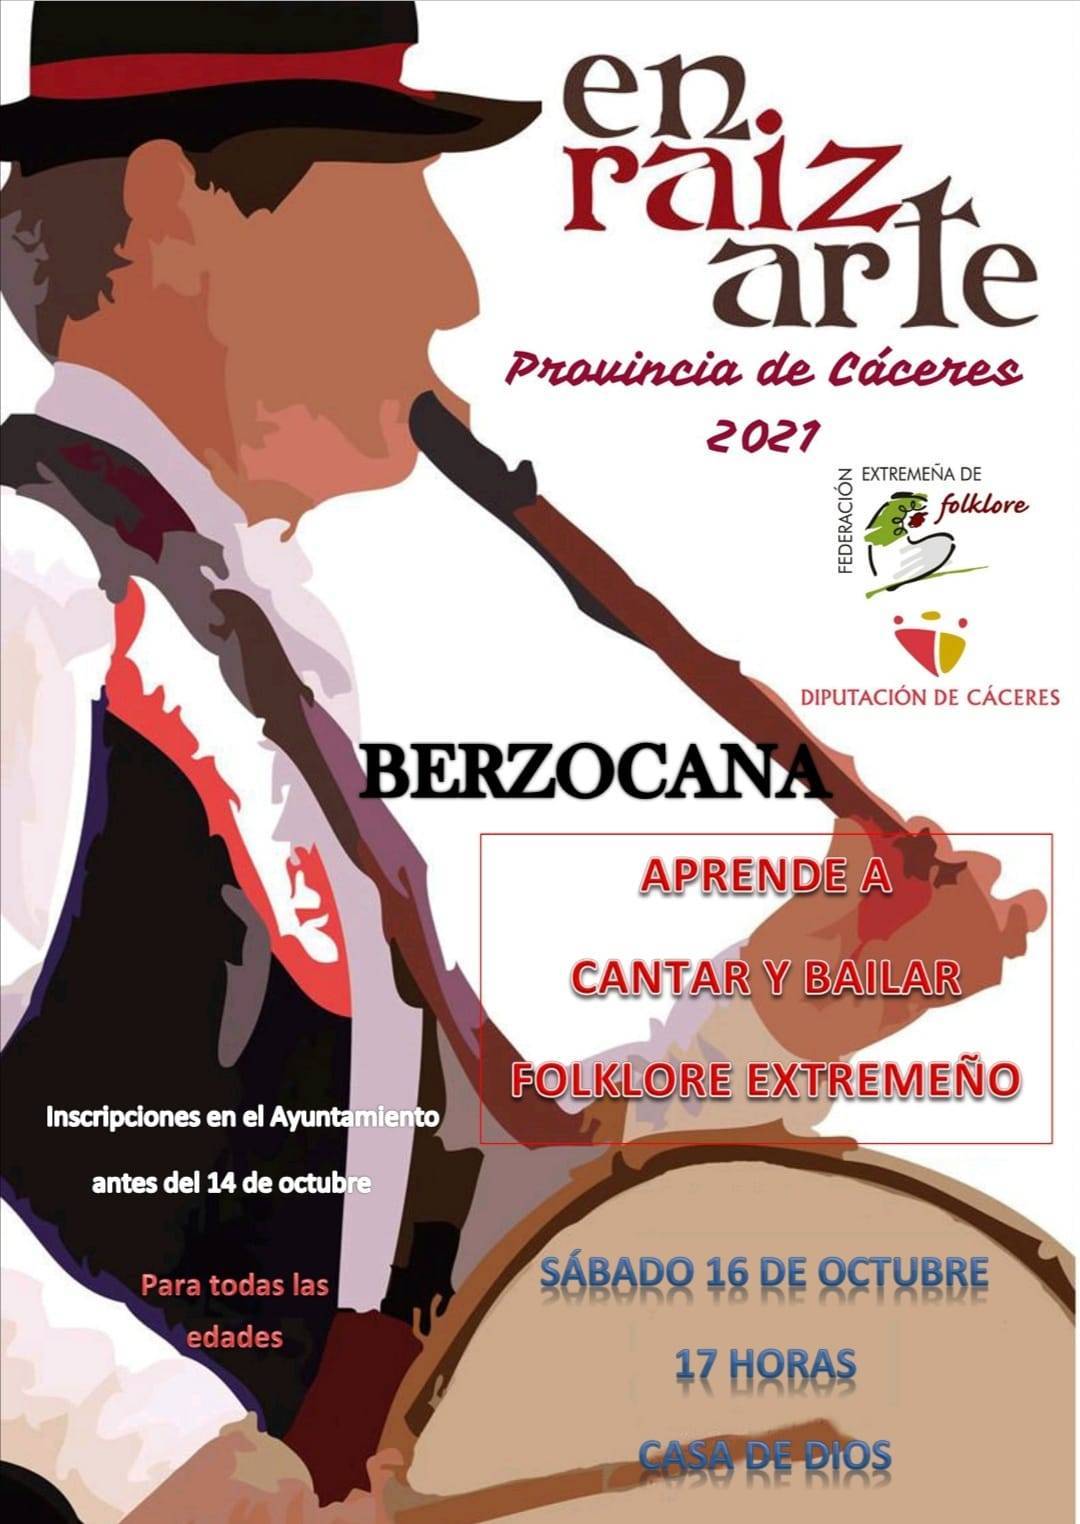 Enraizarte (2021) - Berzocana (Cáceres)